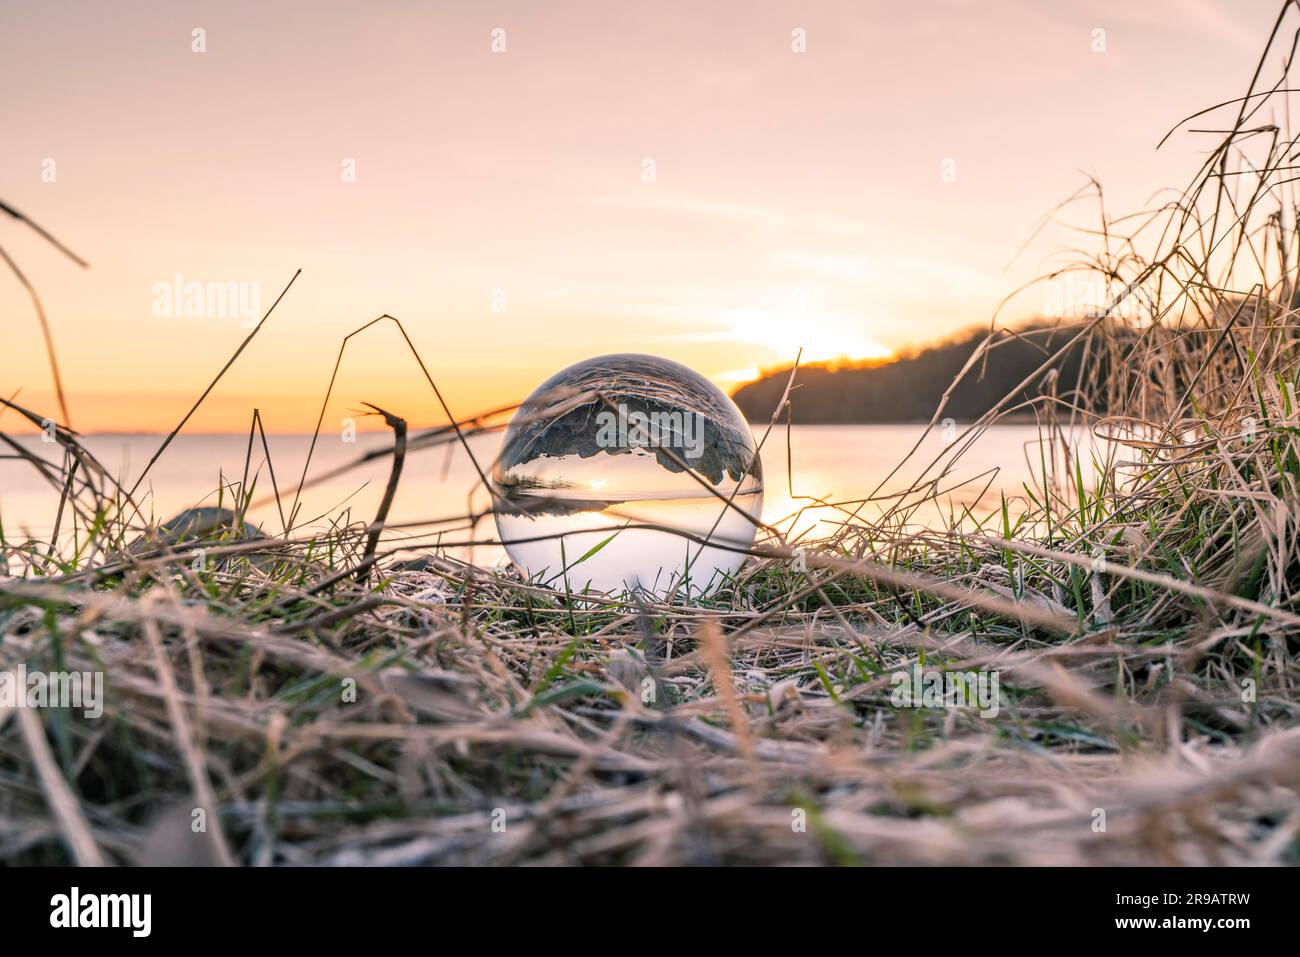 Sfera di cristallo in erba congelate da un lago in l'alba in un freddo giorno Foto Stock